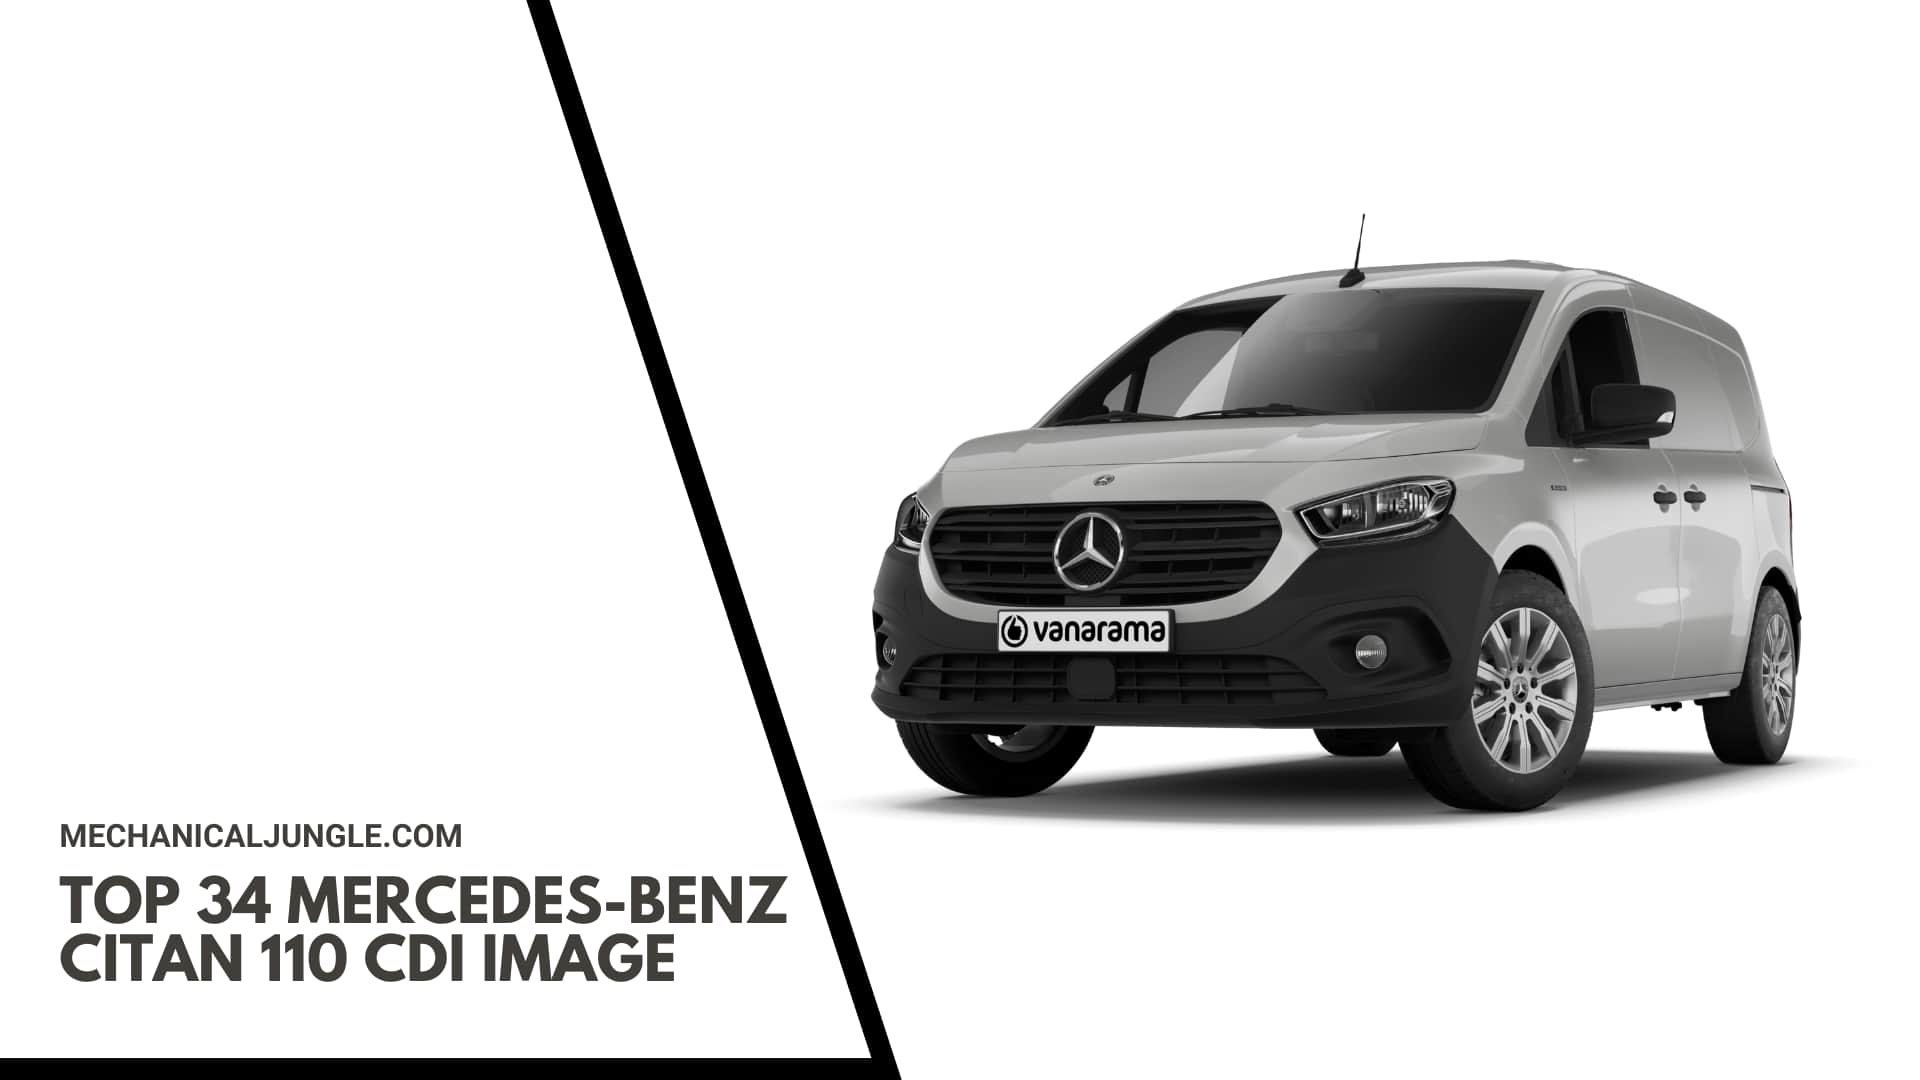 Top 34 Mercedes-Benz Citan 110 CDI Image